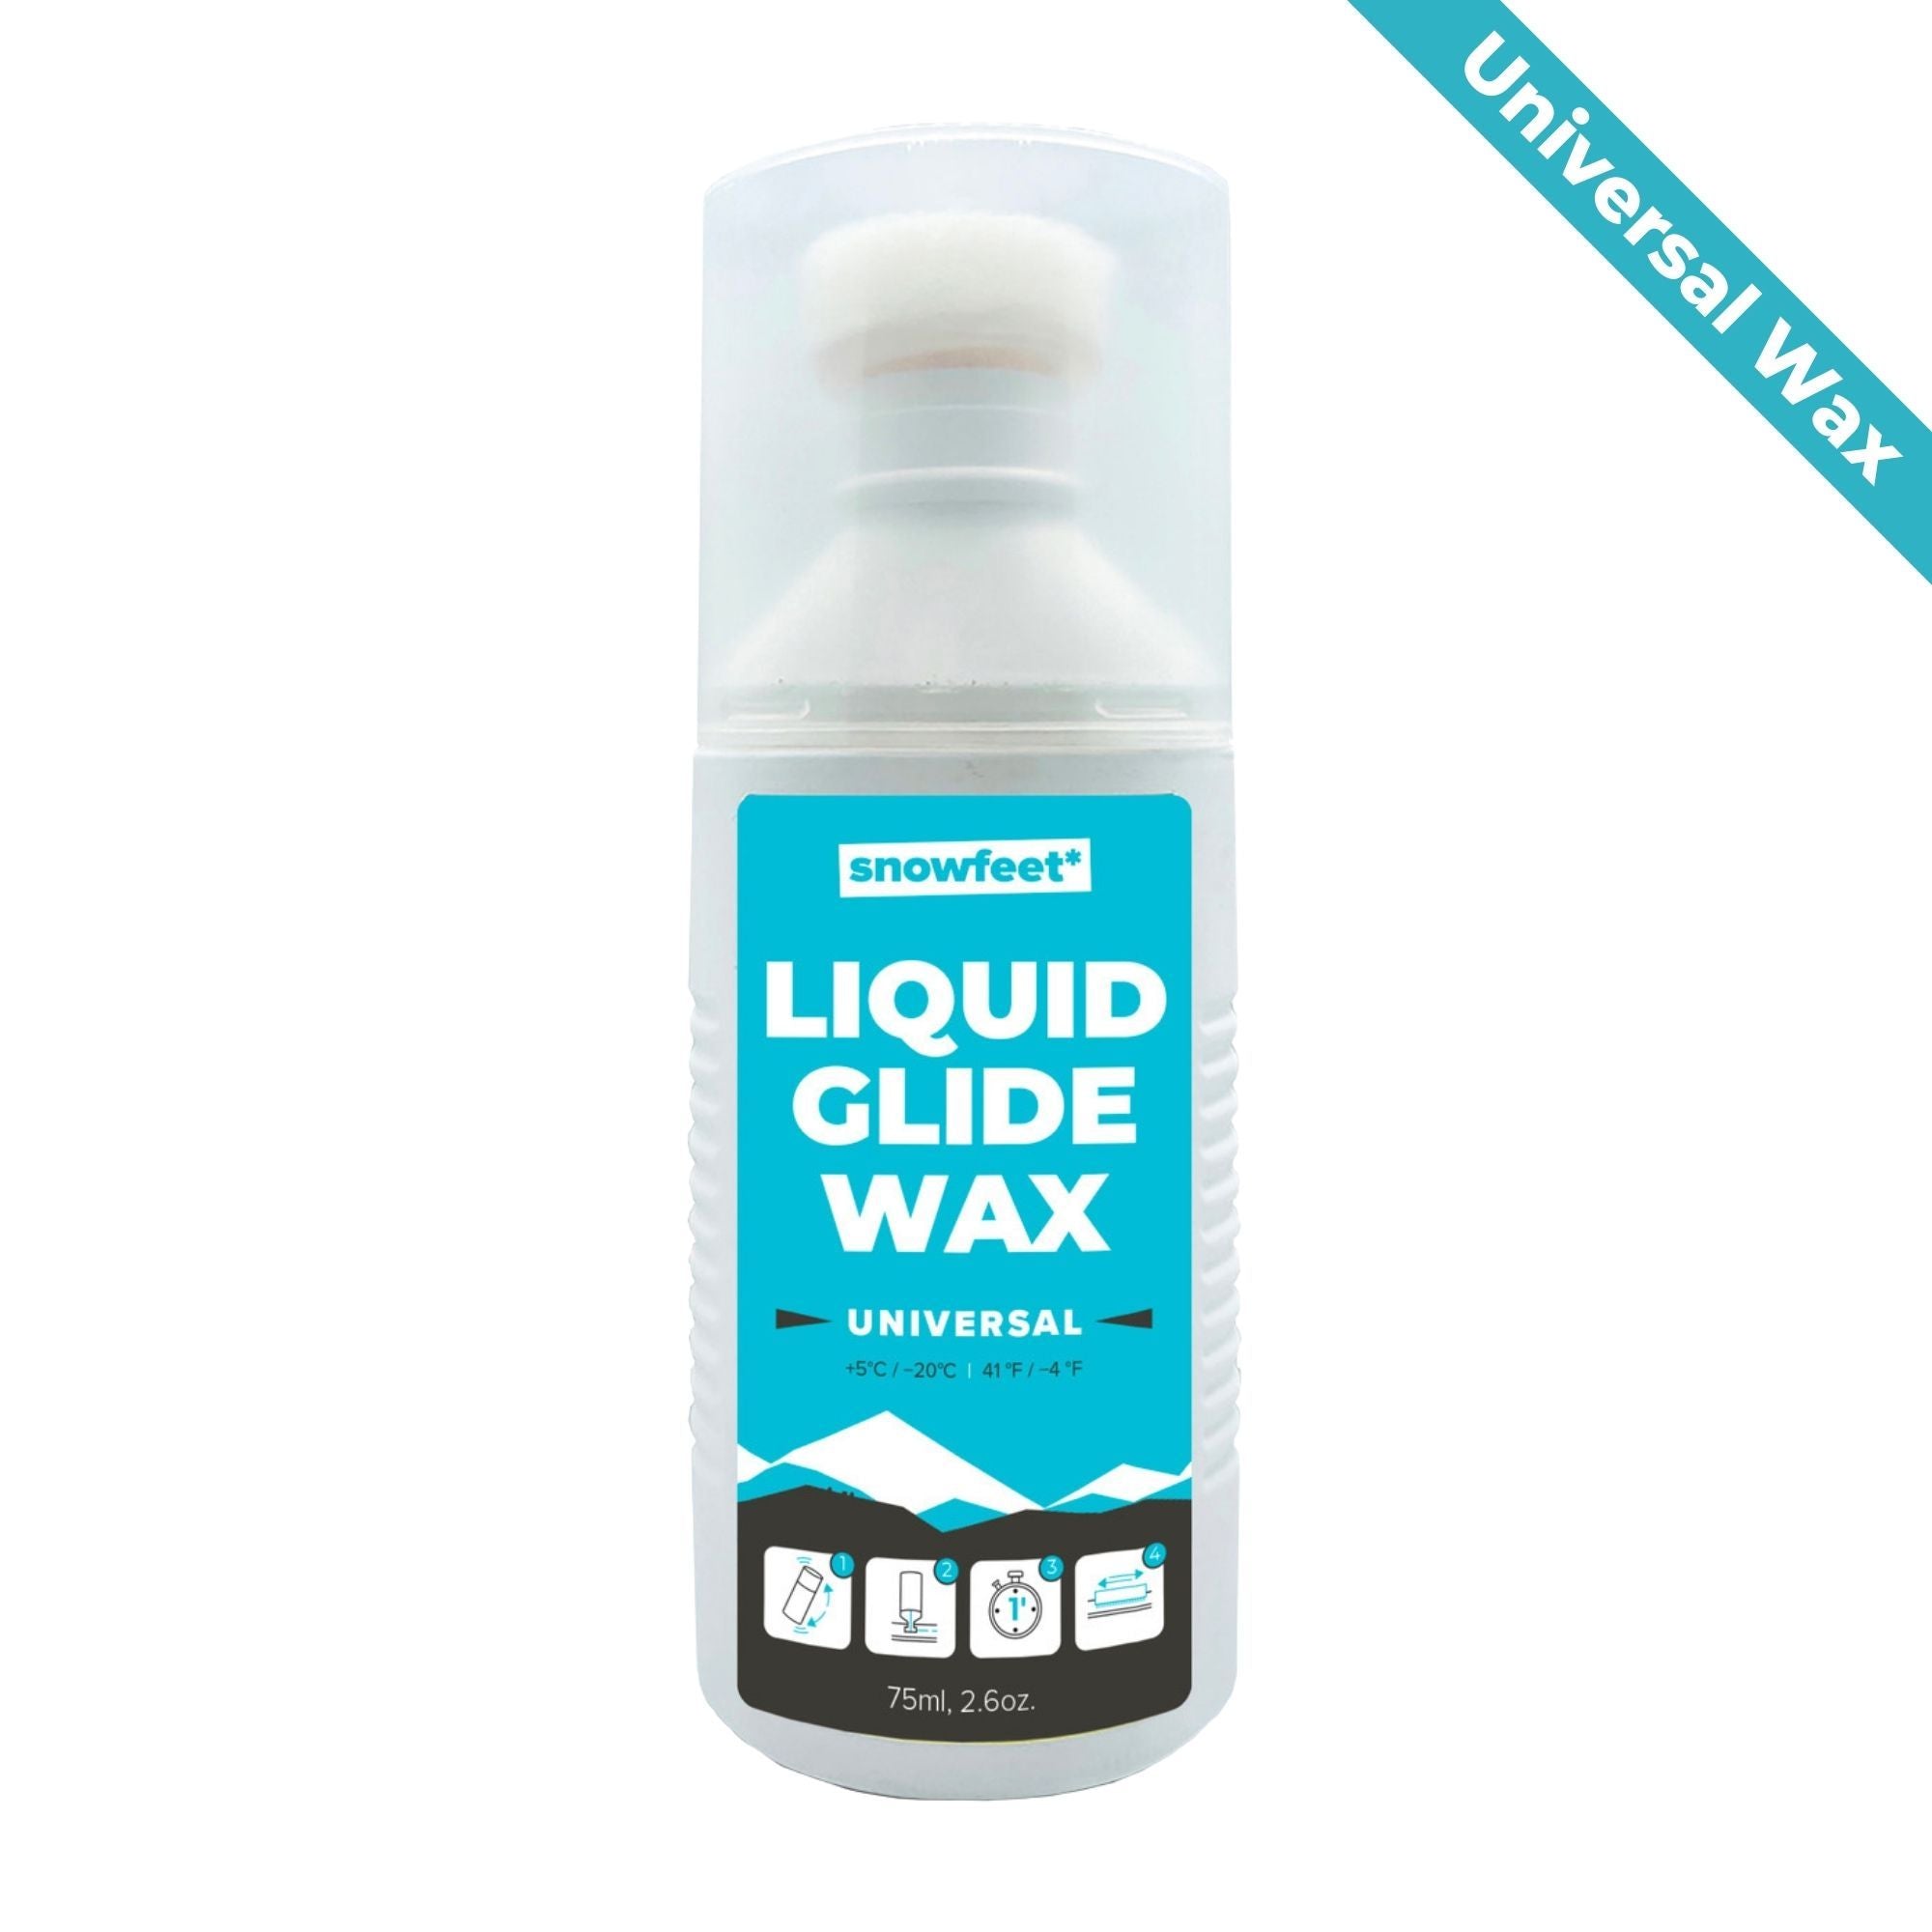 Liquid Wax by Snowfeet | Universal +5°C / -20°C | 41°F / -4°F | 75ml